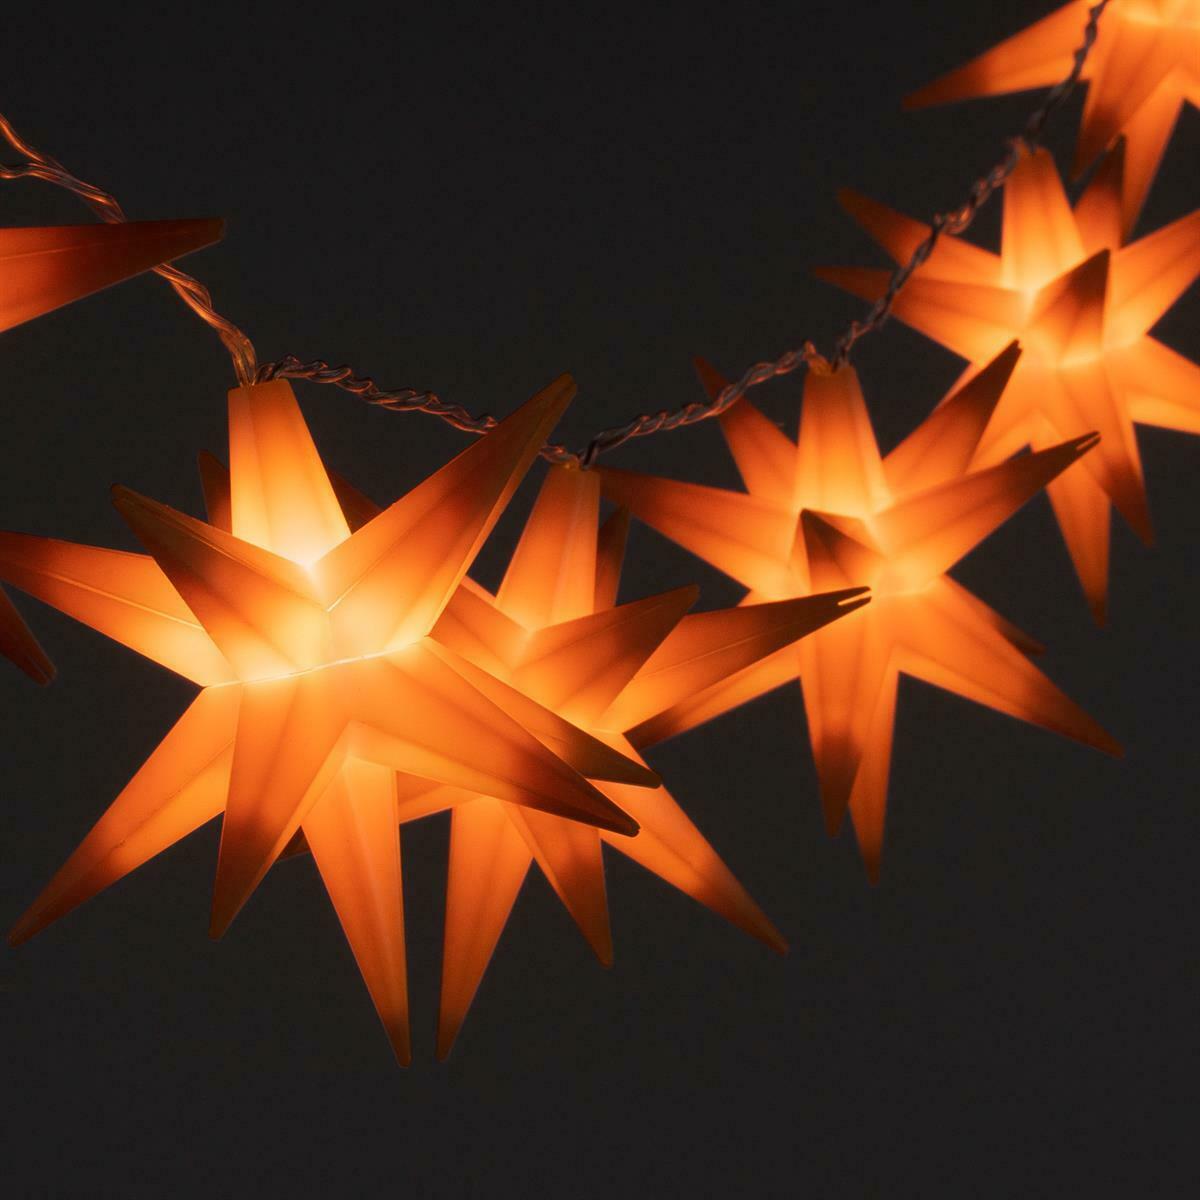 10 Sternenlichterkette Led Orange Weihnachtsdeko aussen | Beleuchtete Weihnachtssterne